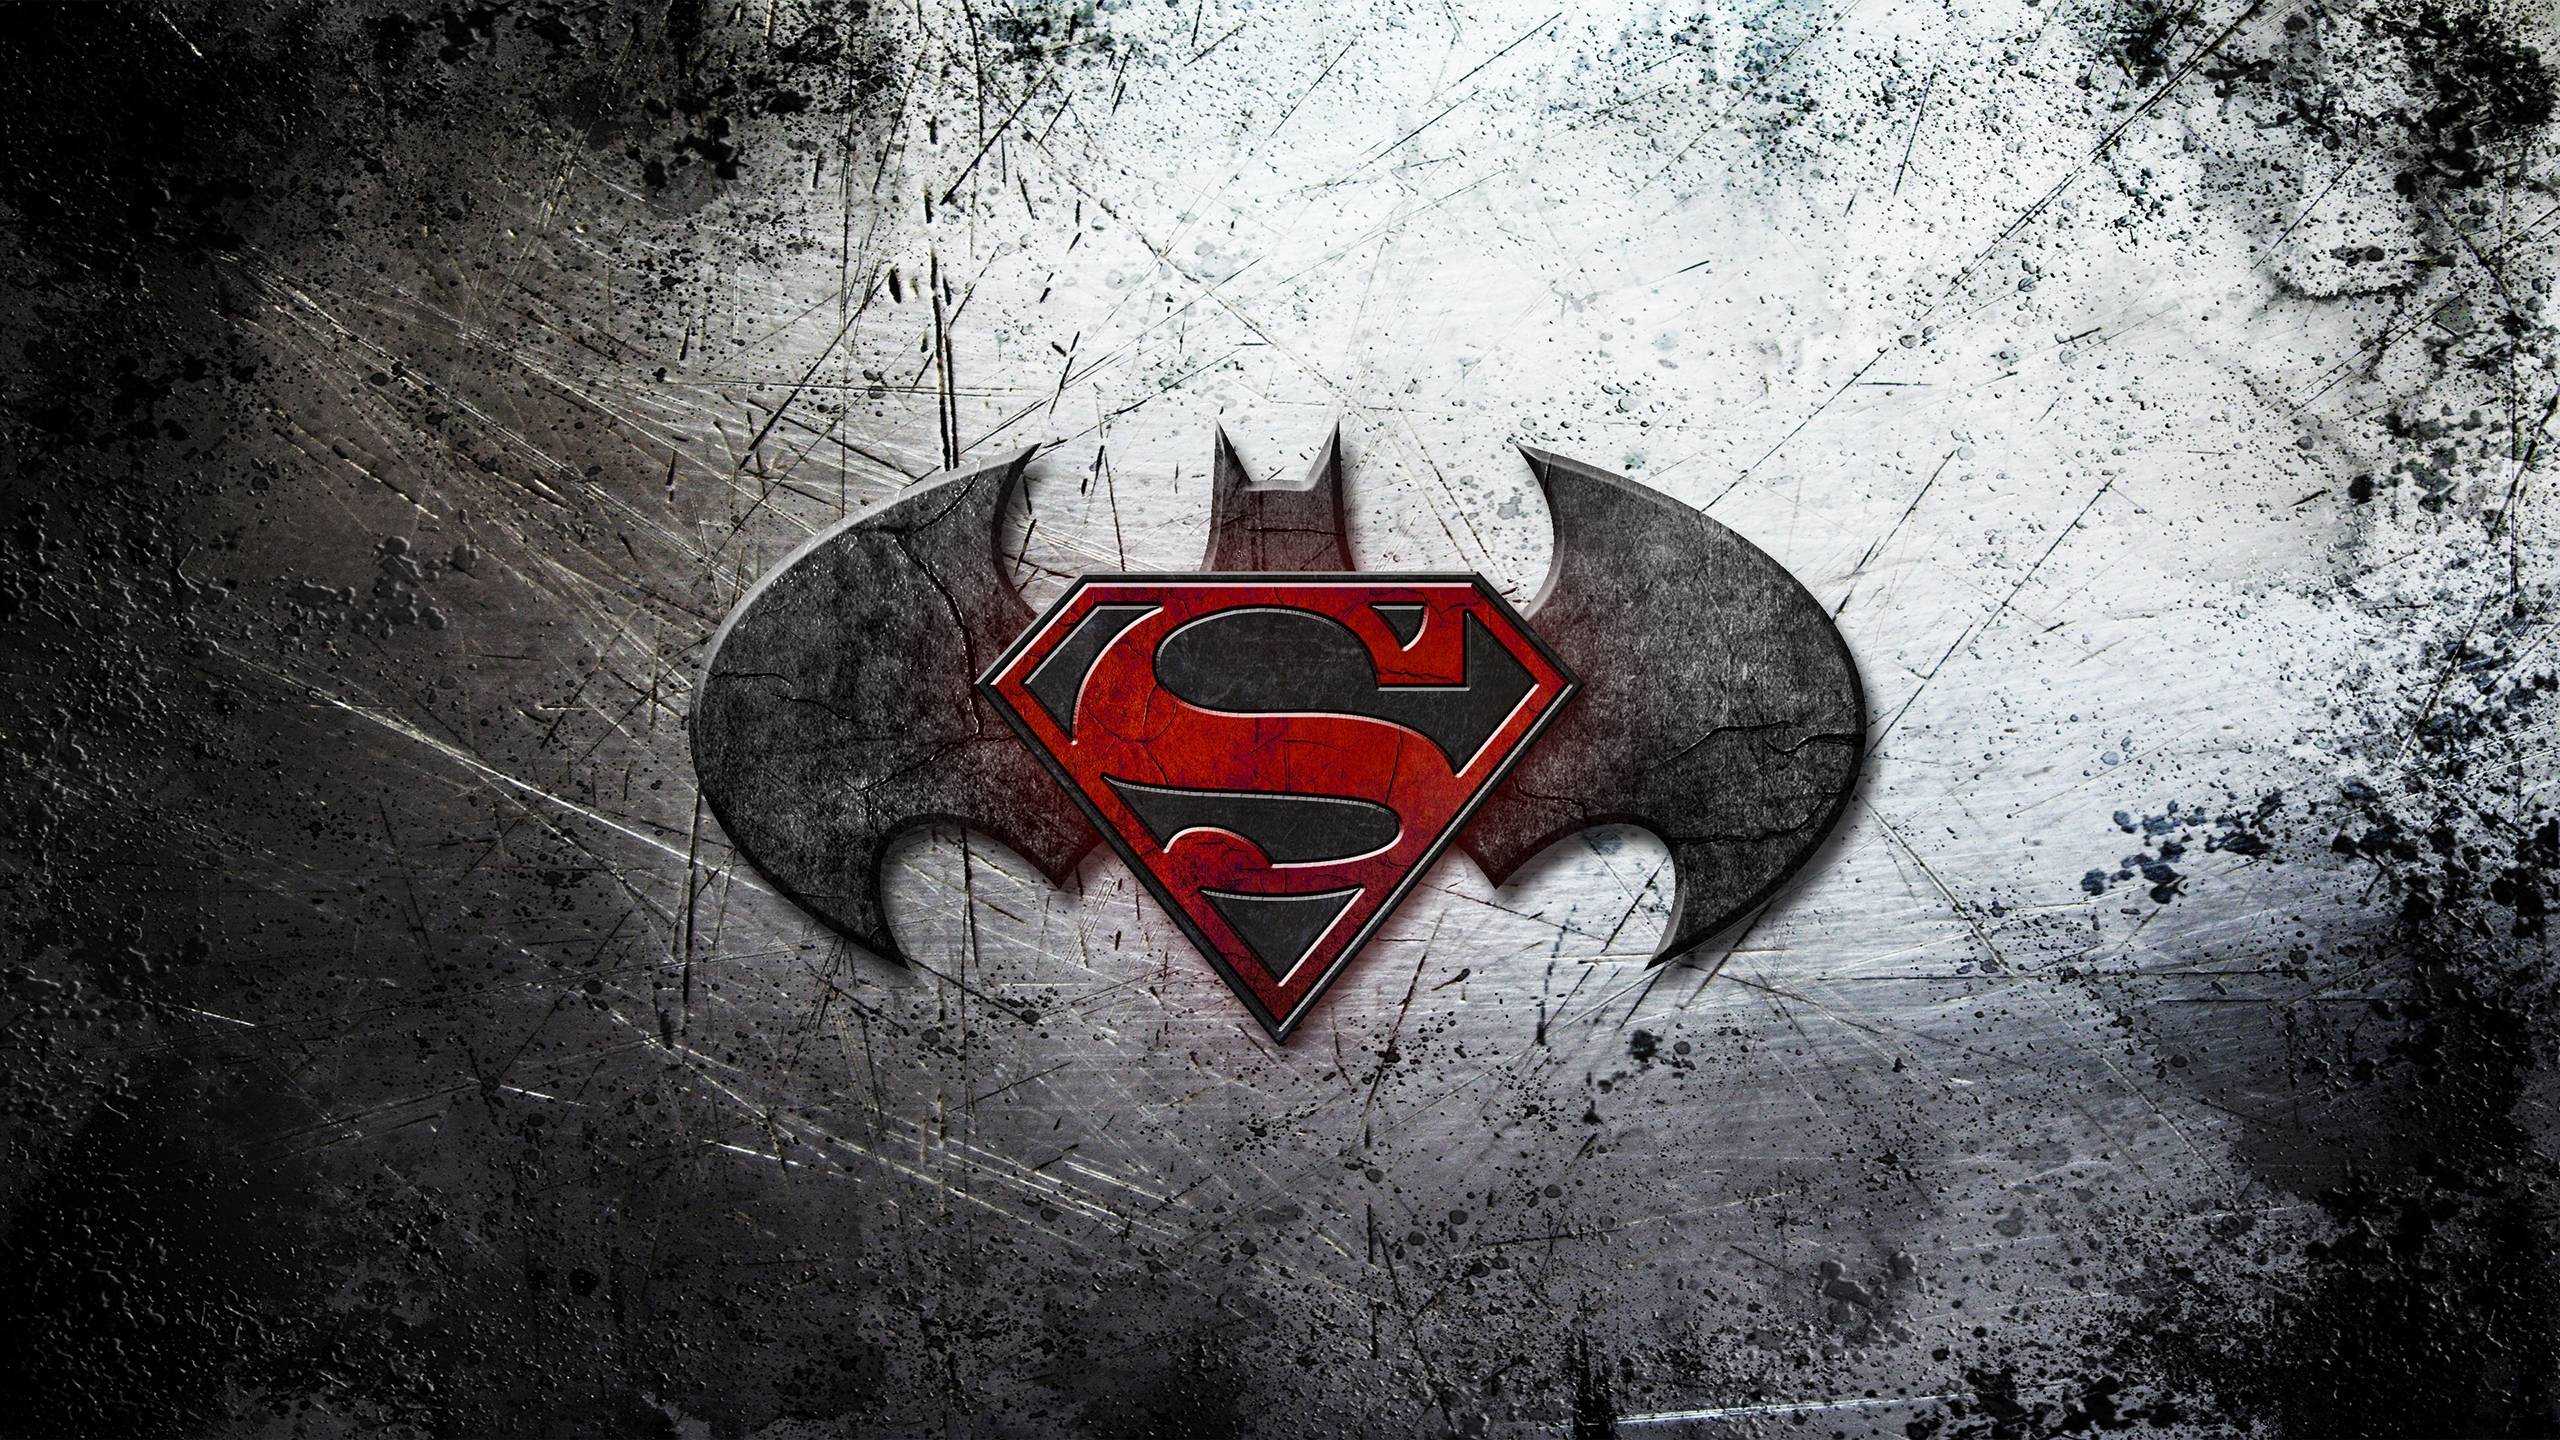 Batman Vs Superman Wallpaper Full HD Of iPhone Pics